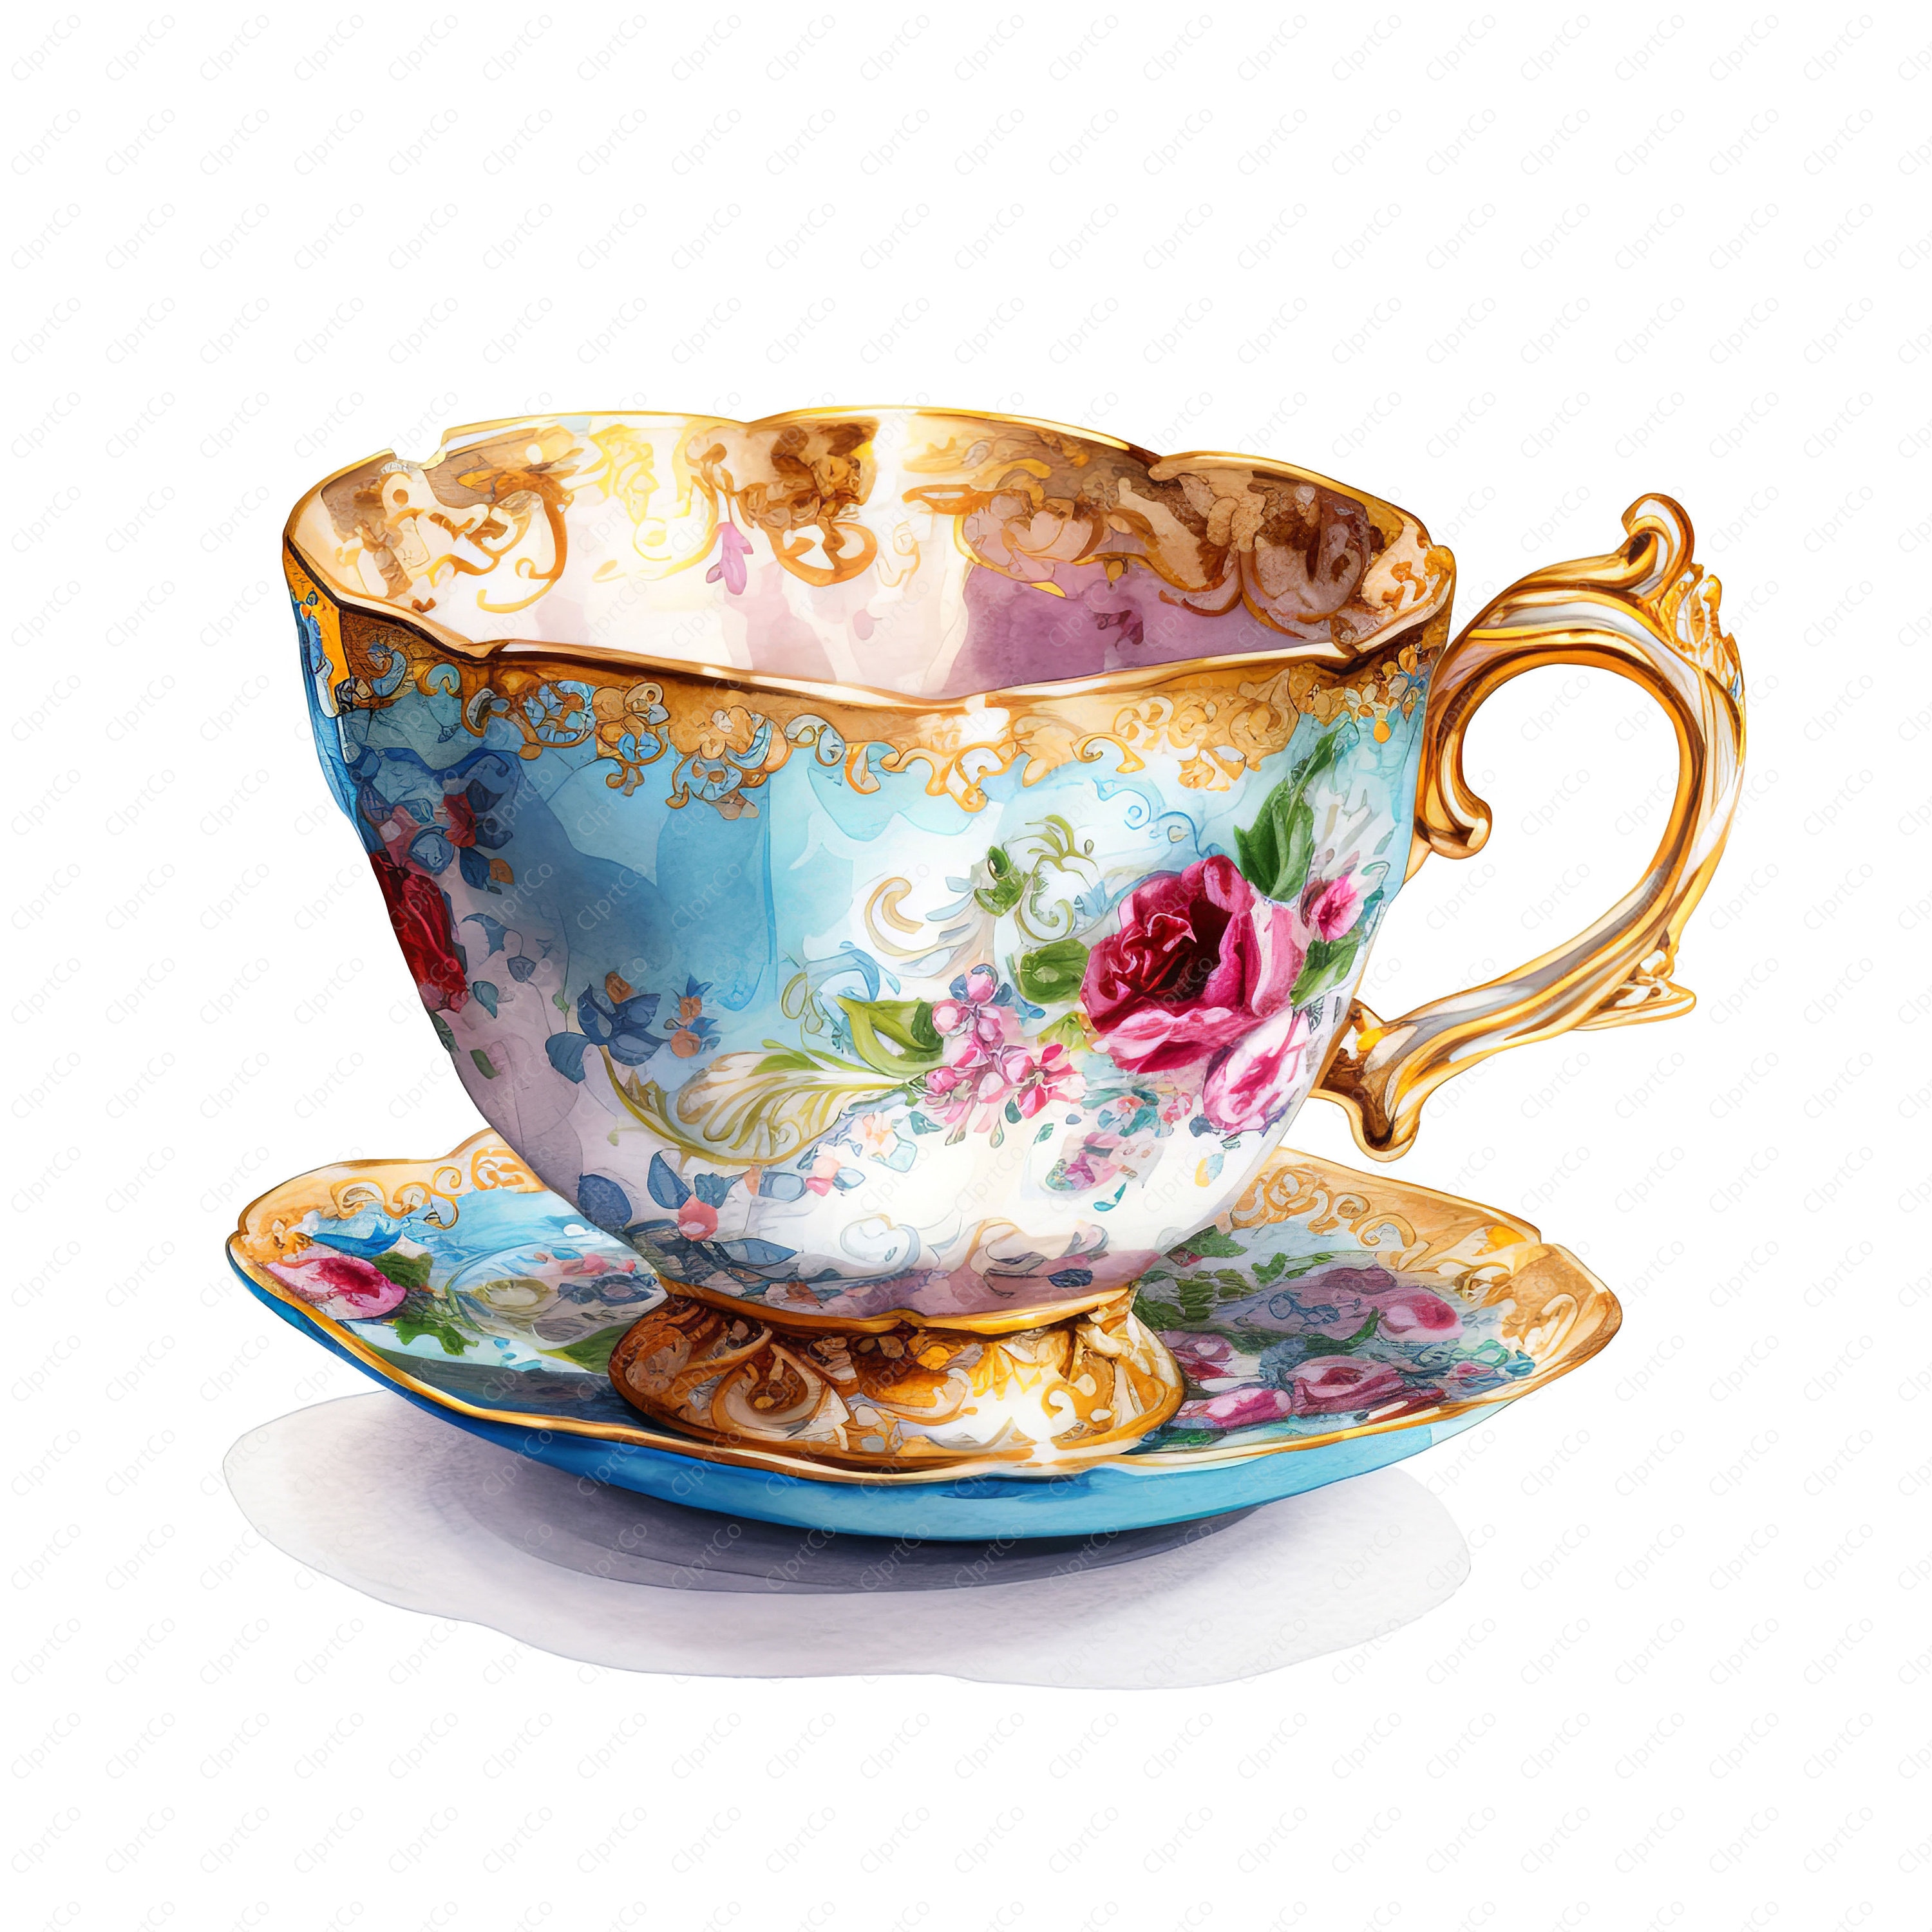 tazas de te vintage - Buscar con Google  Tea cups, Tea cups vintage,  Vintage tea